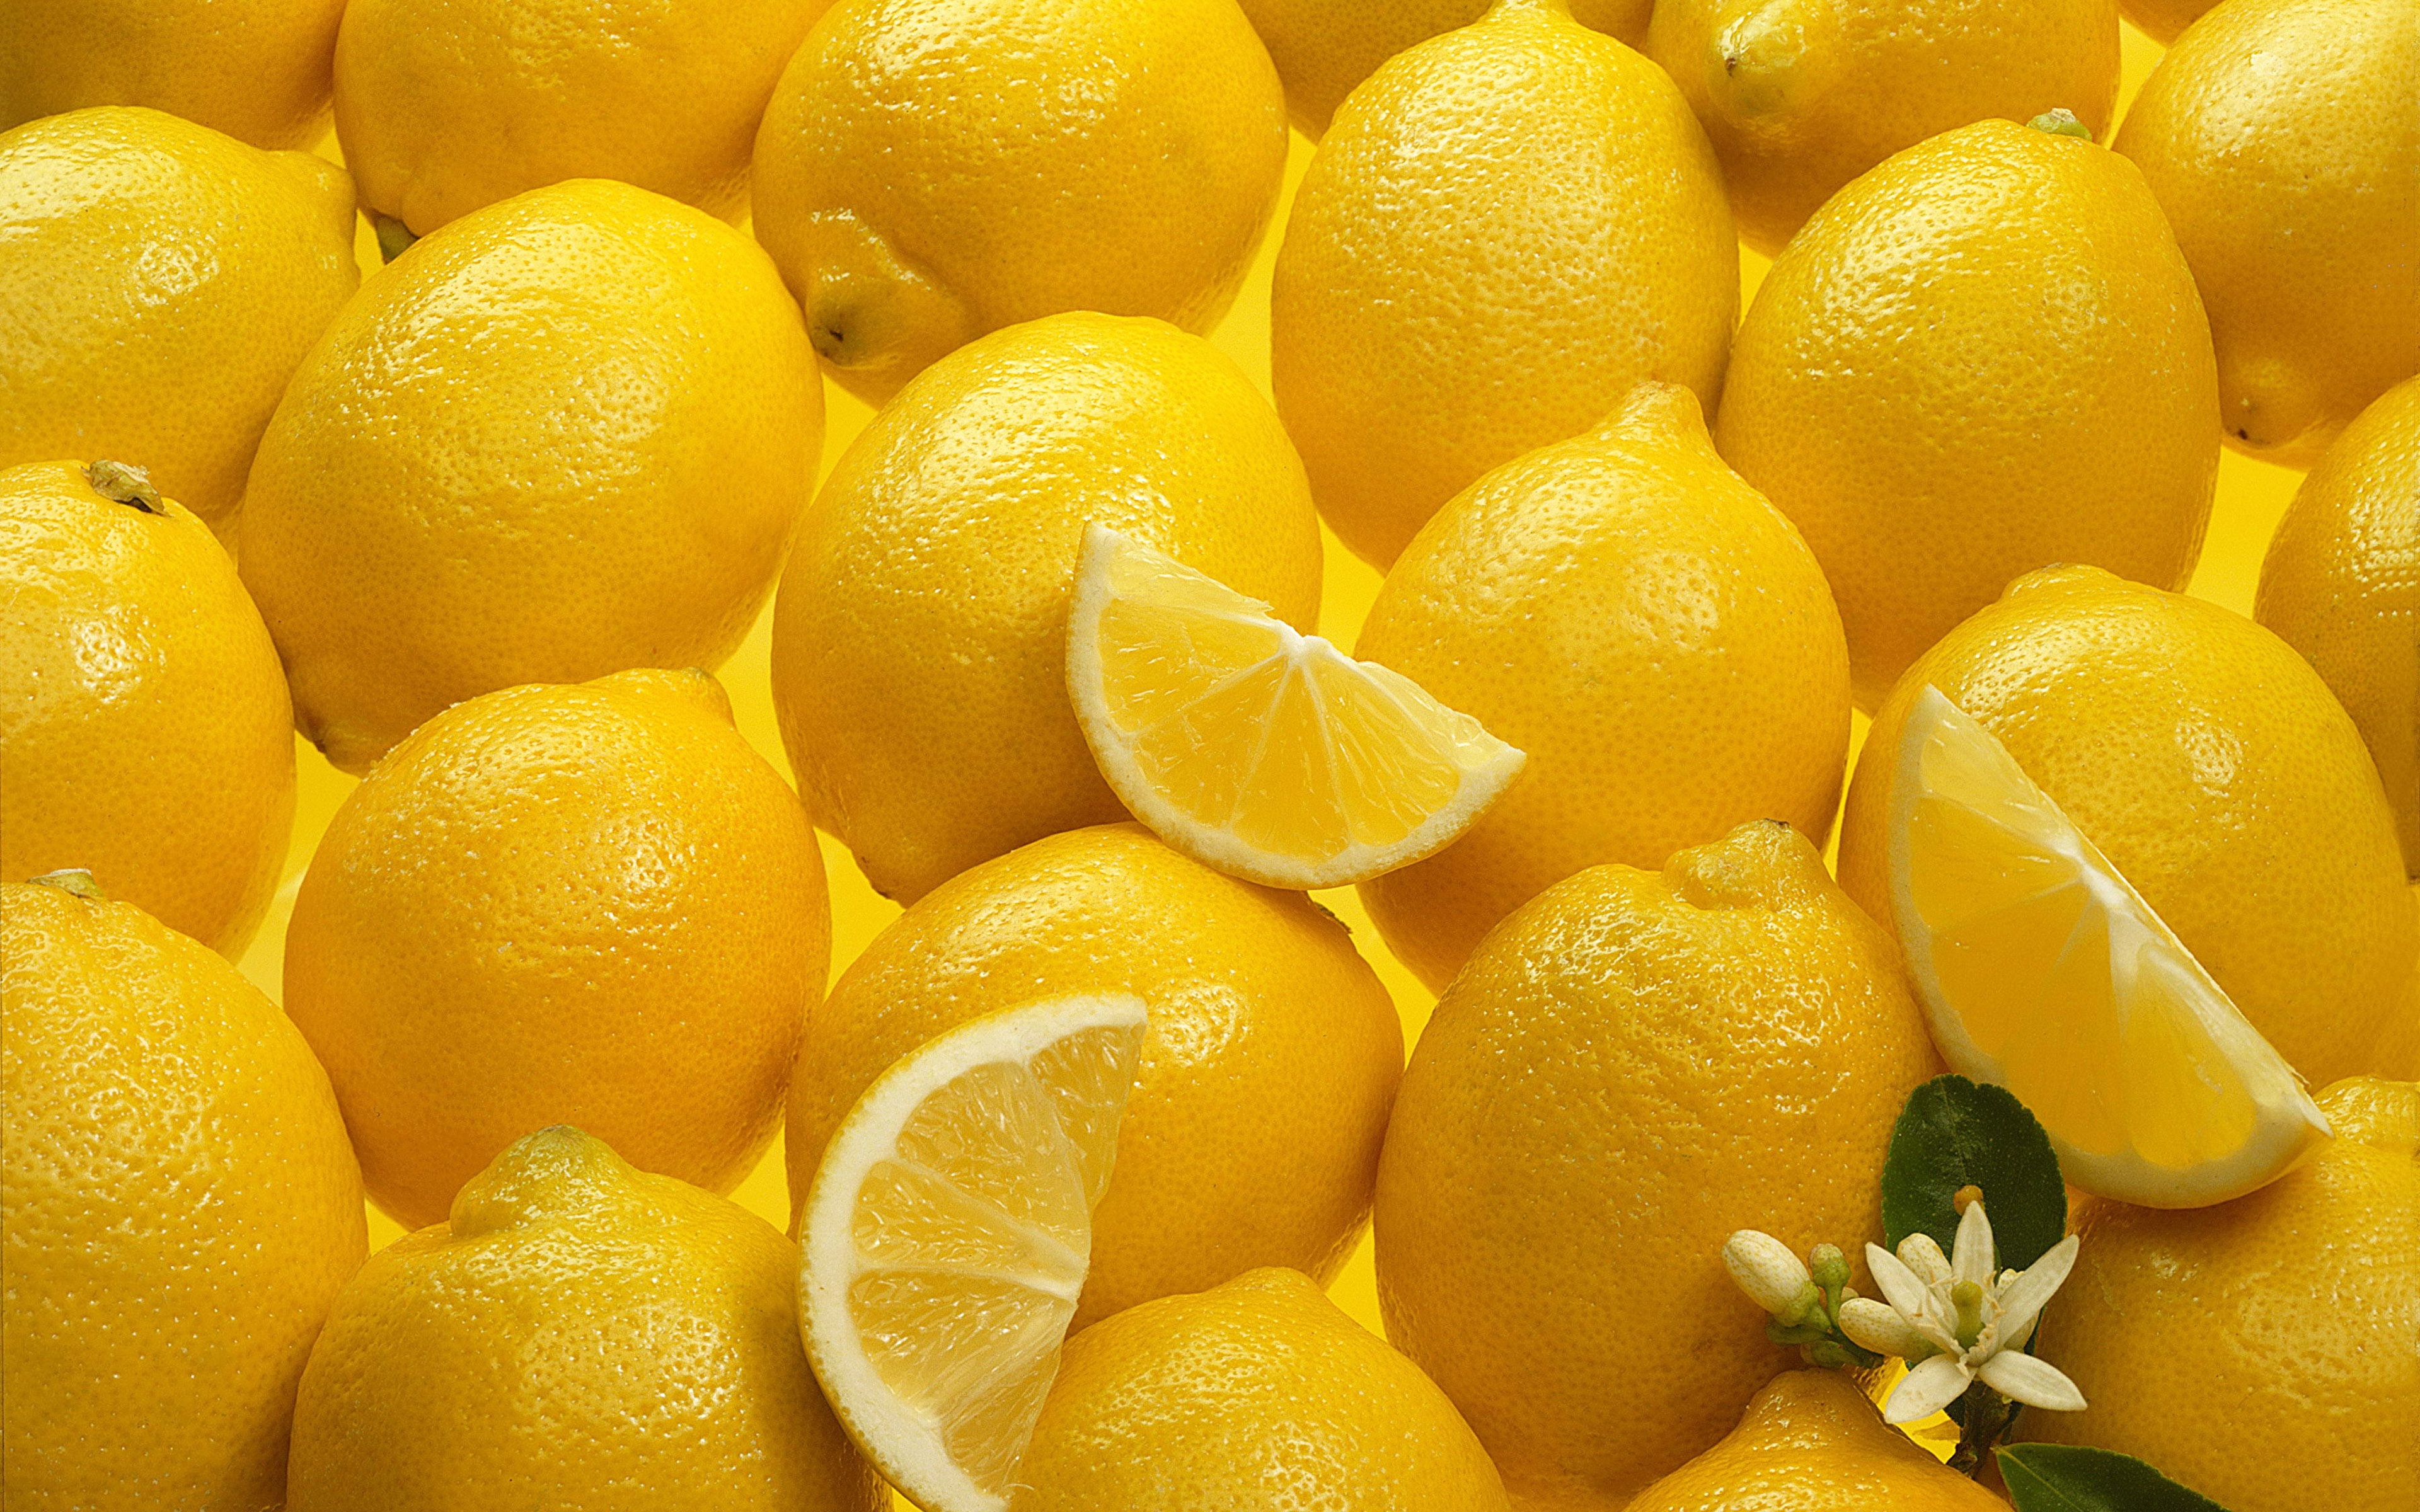 Se pueden congelar los limones